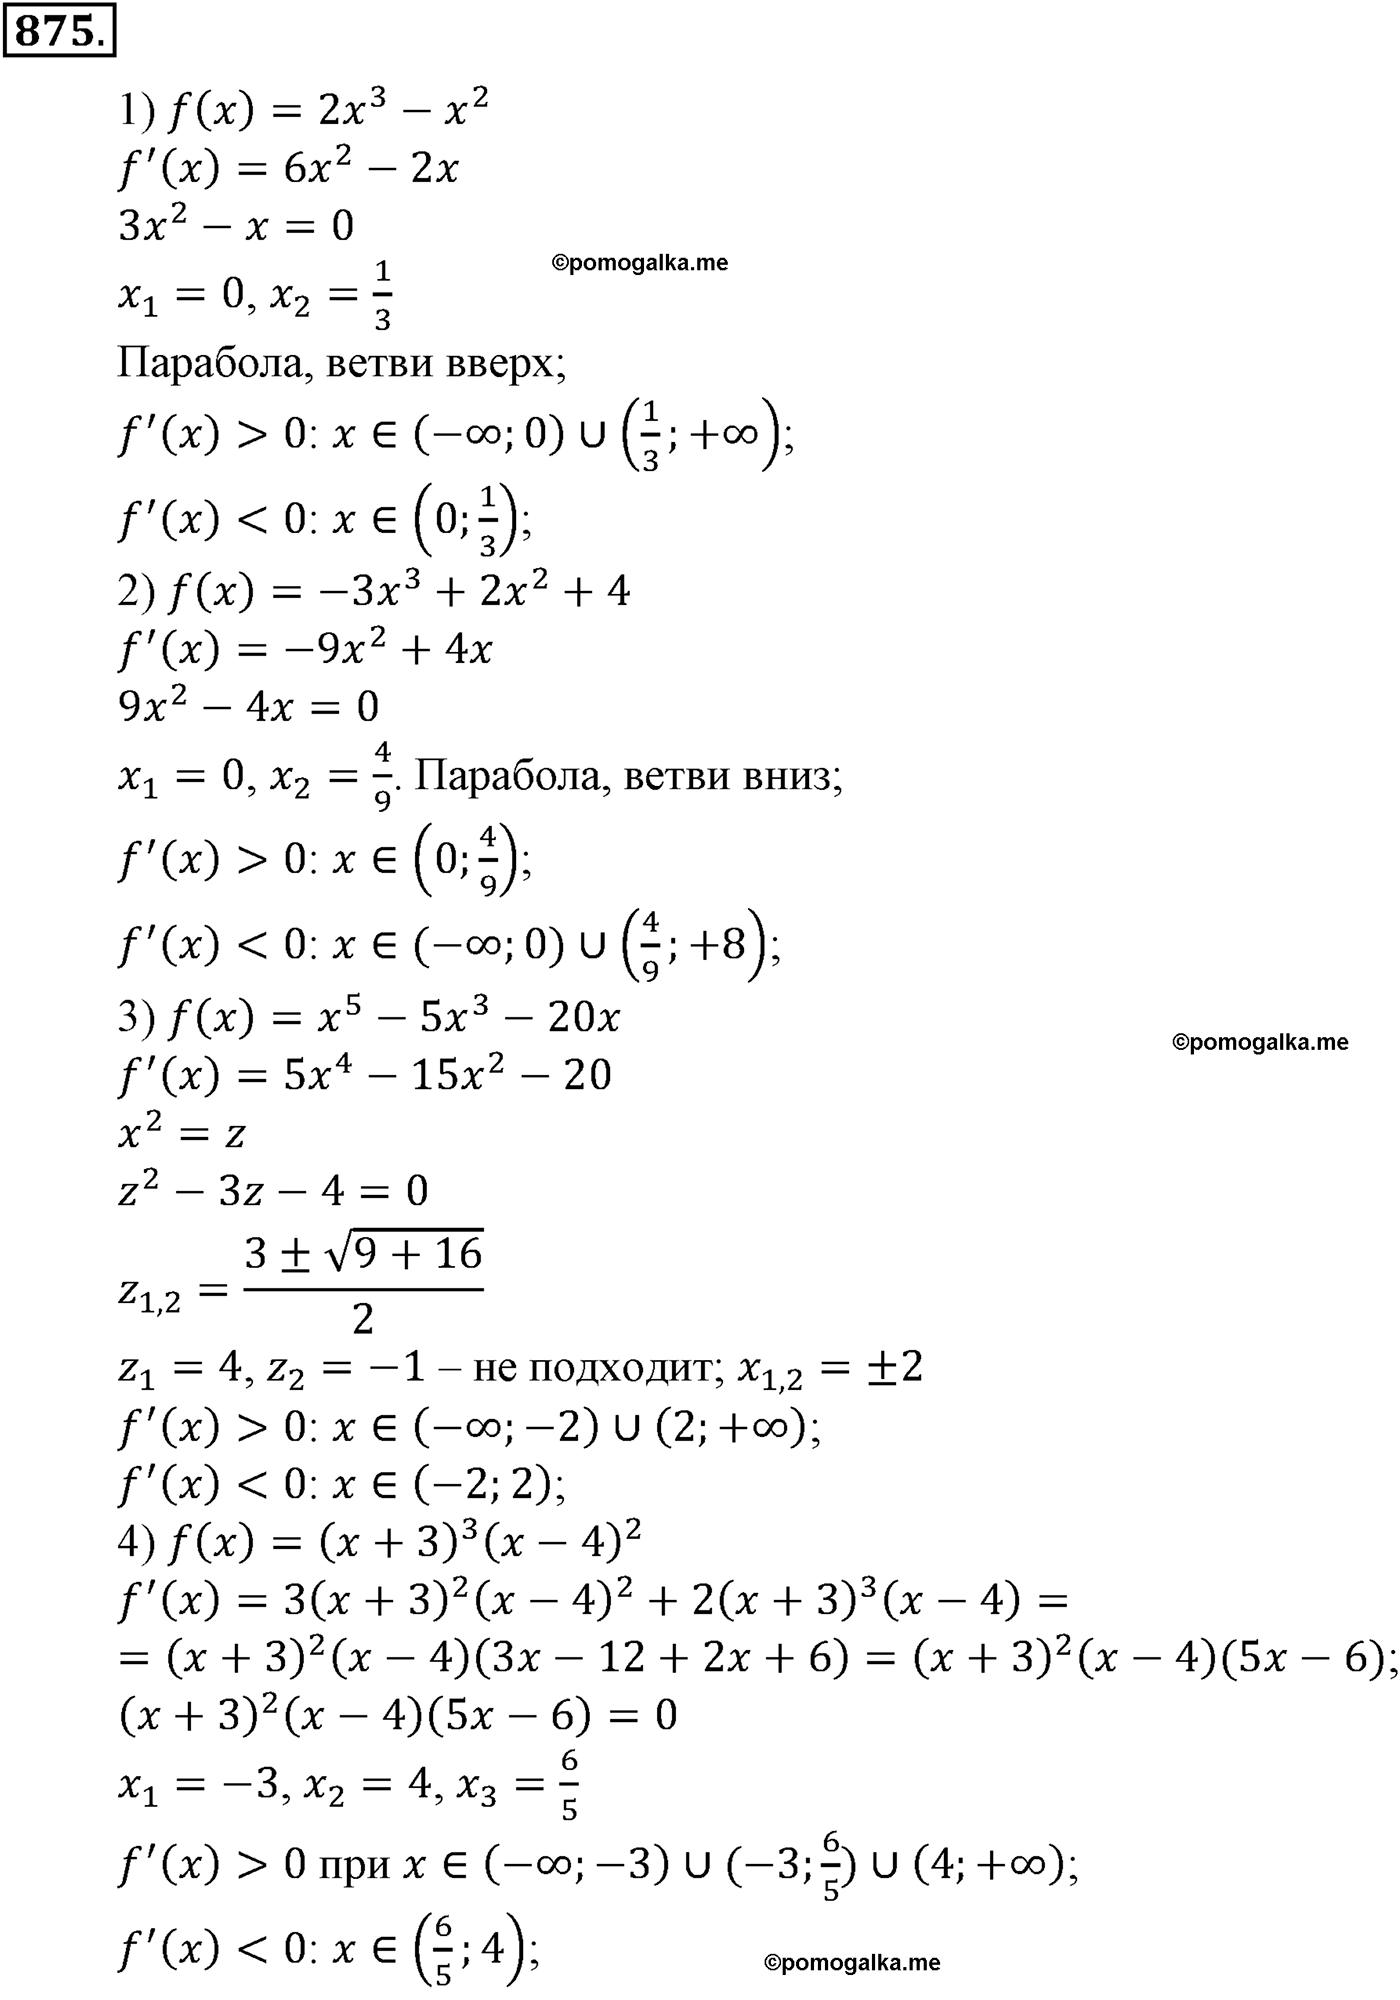 разбор задачи №875 по алгебре за 10-11 класс из учебника Алимова, Колягина